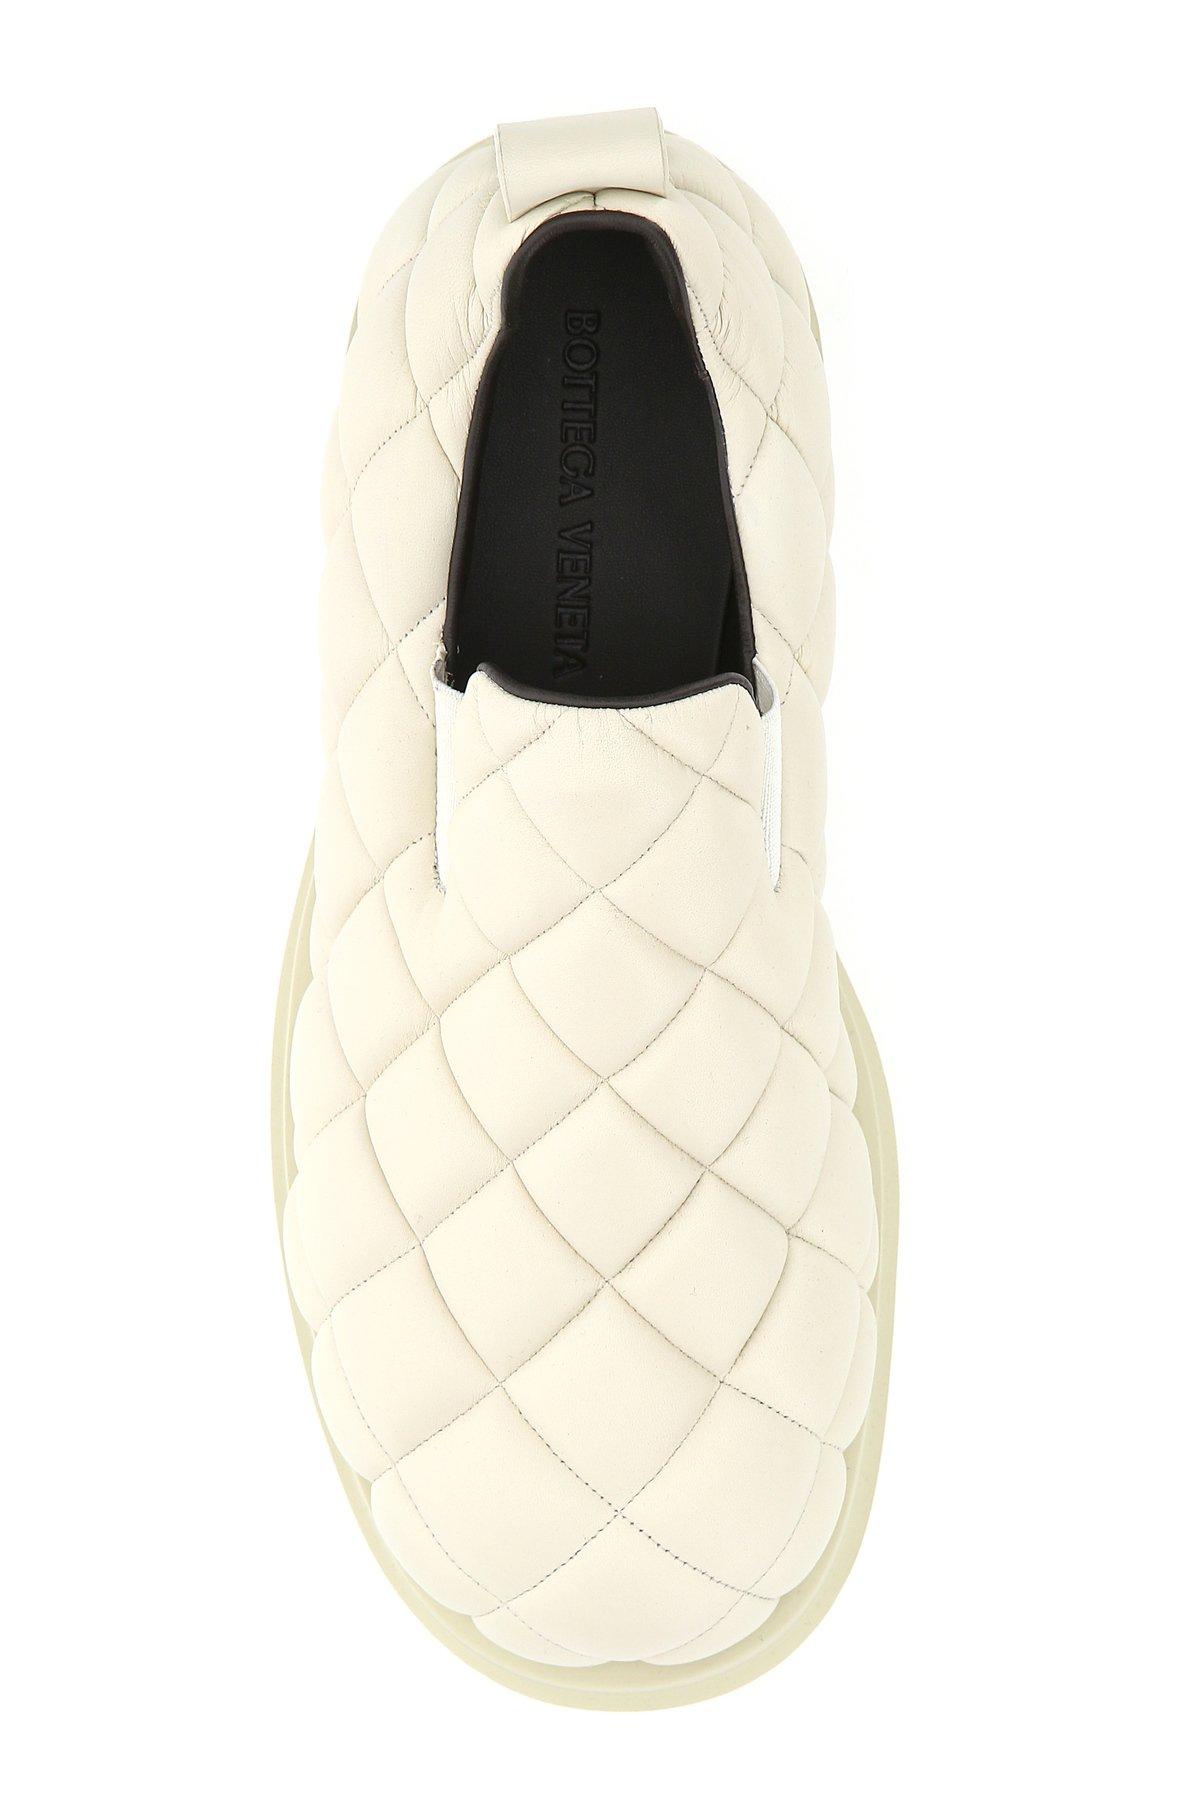 Bottega Veneta Leather Quilted Slip On Shoes in White for Men - Lyst